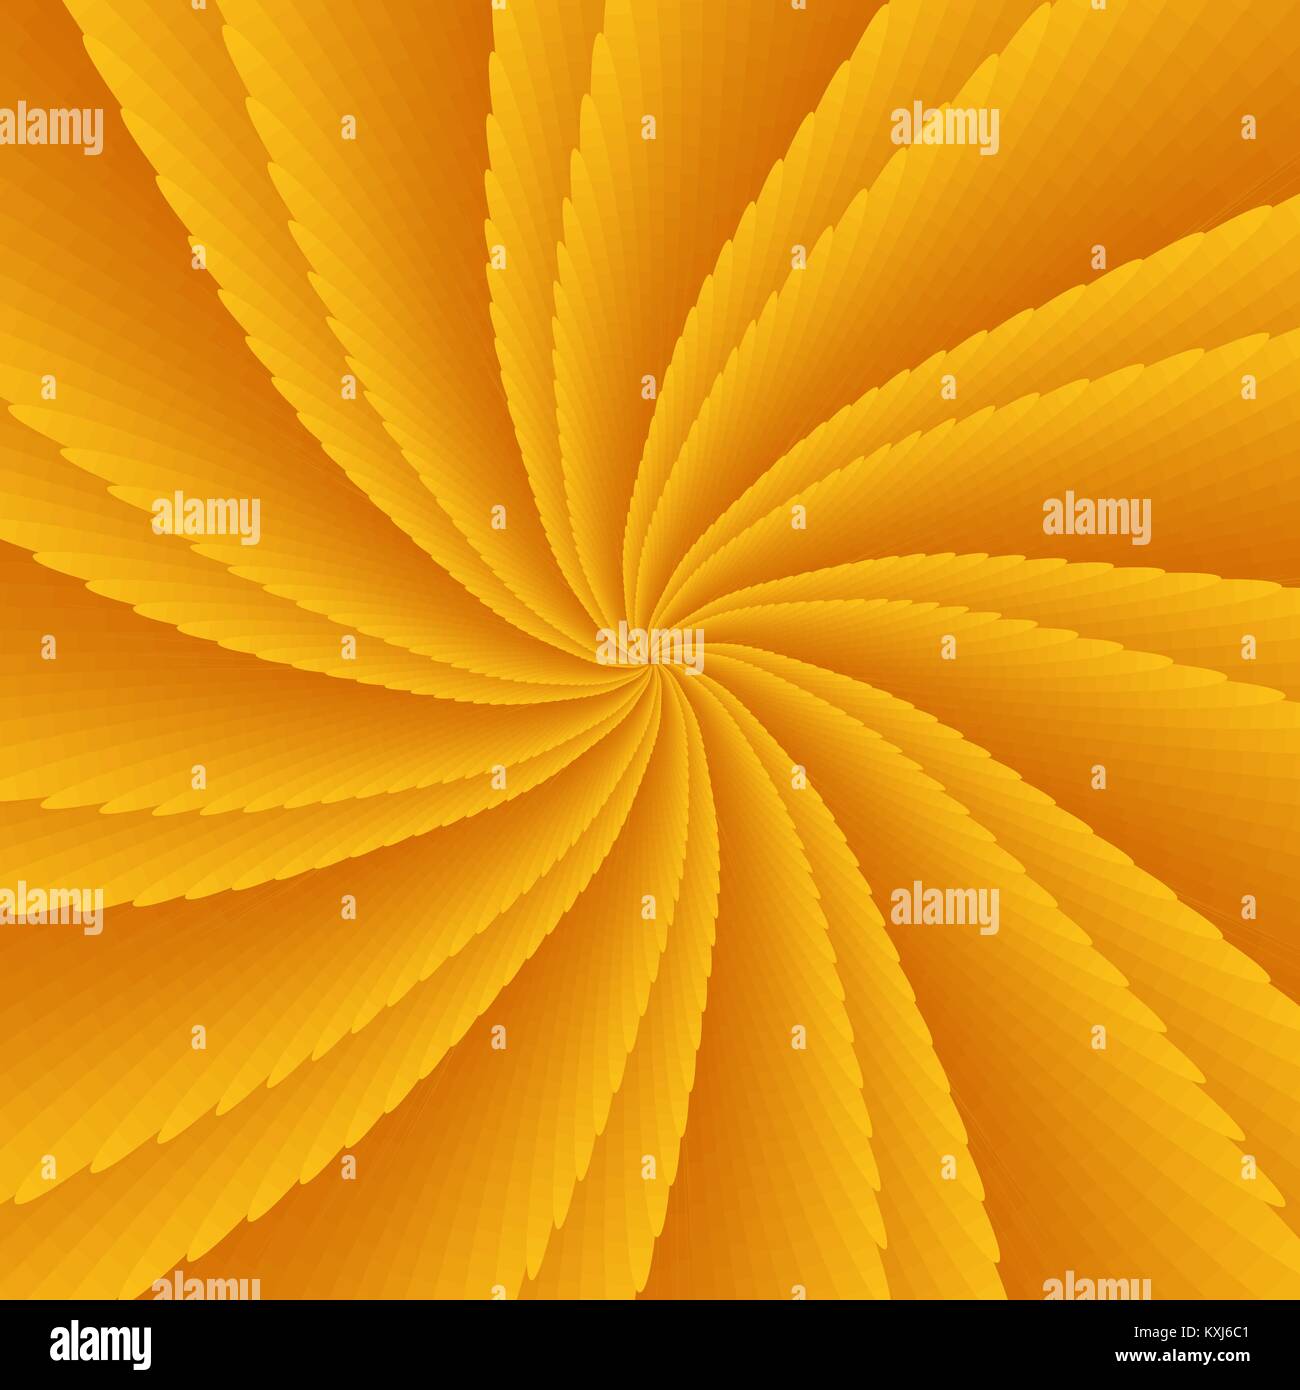 Arancio astratto twisted illusione ottica, creative vettore simmetrico a spirale con uno sfondo con petali di gradiente e fette Illustrazione Vettoriale